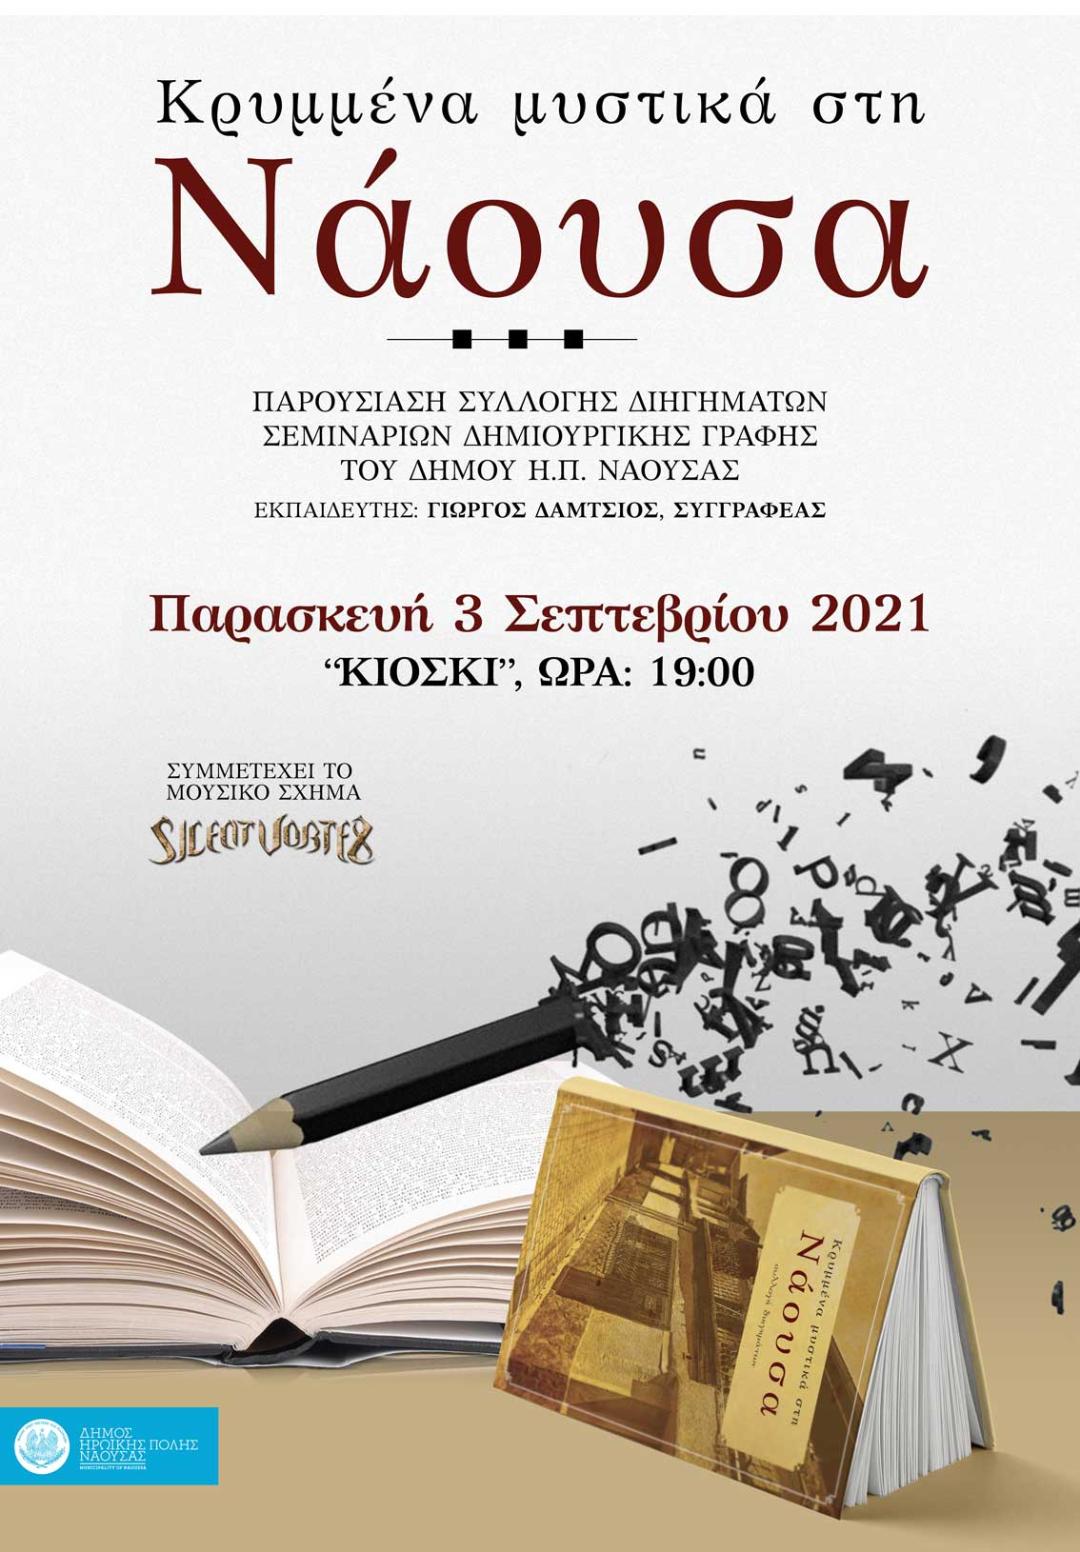 Εκδήλωση παρουσίασης του βιβλίου των τμημάτων Δημιουργικής Γραφής του Δήμου Νάουσας (''Κρυμμένα μυστικά στη Νάουσα '')